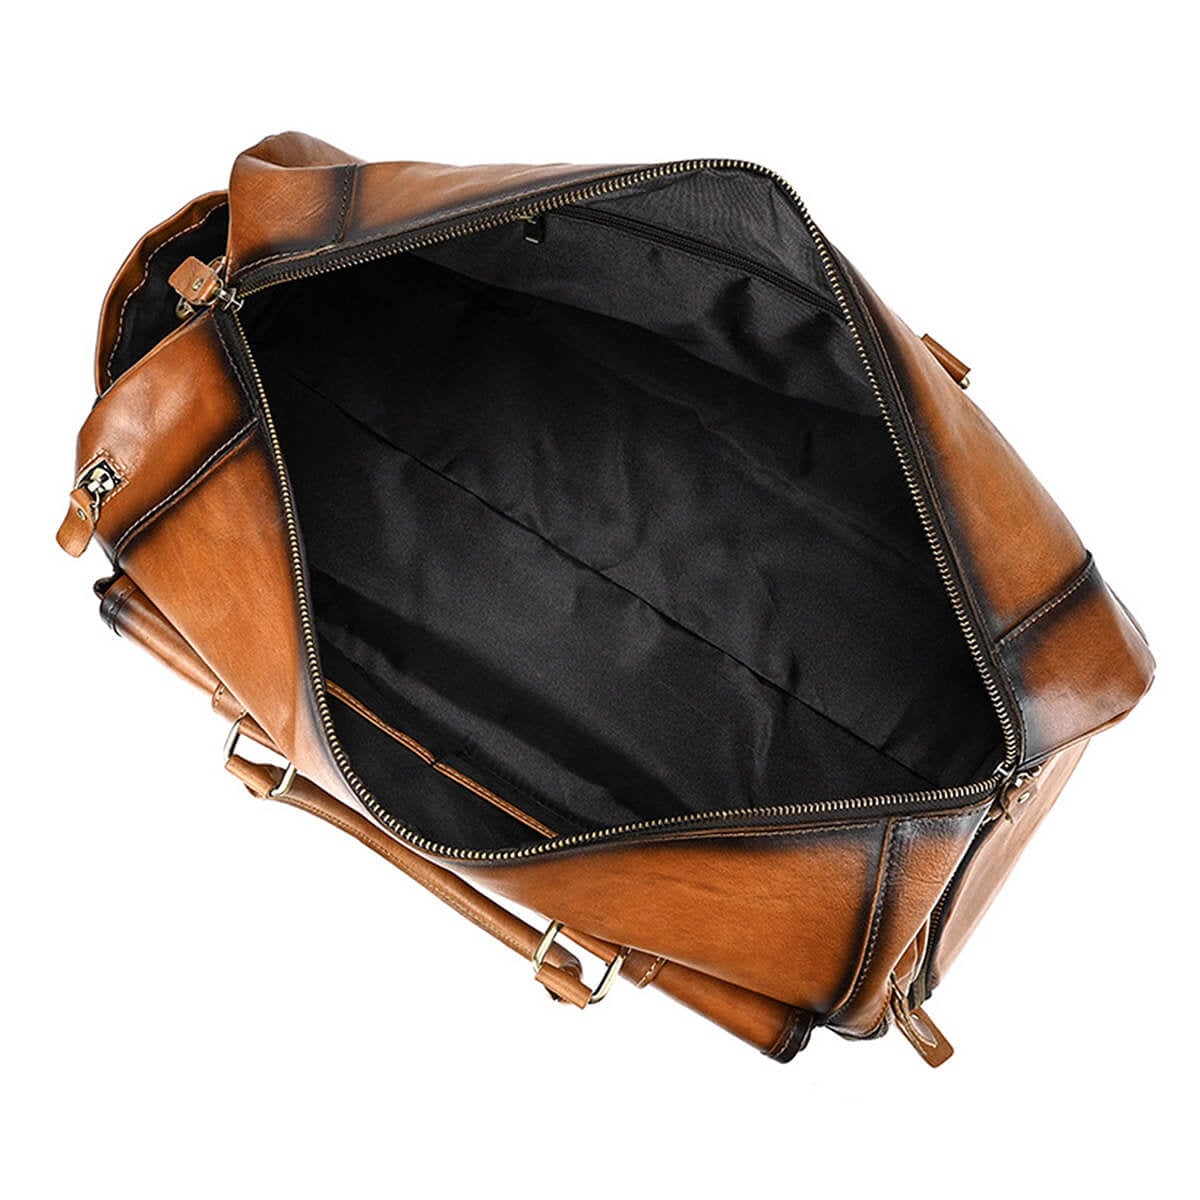 Fashion Retro Cowhide Luggage Travel Bag